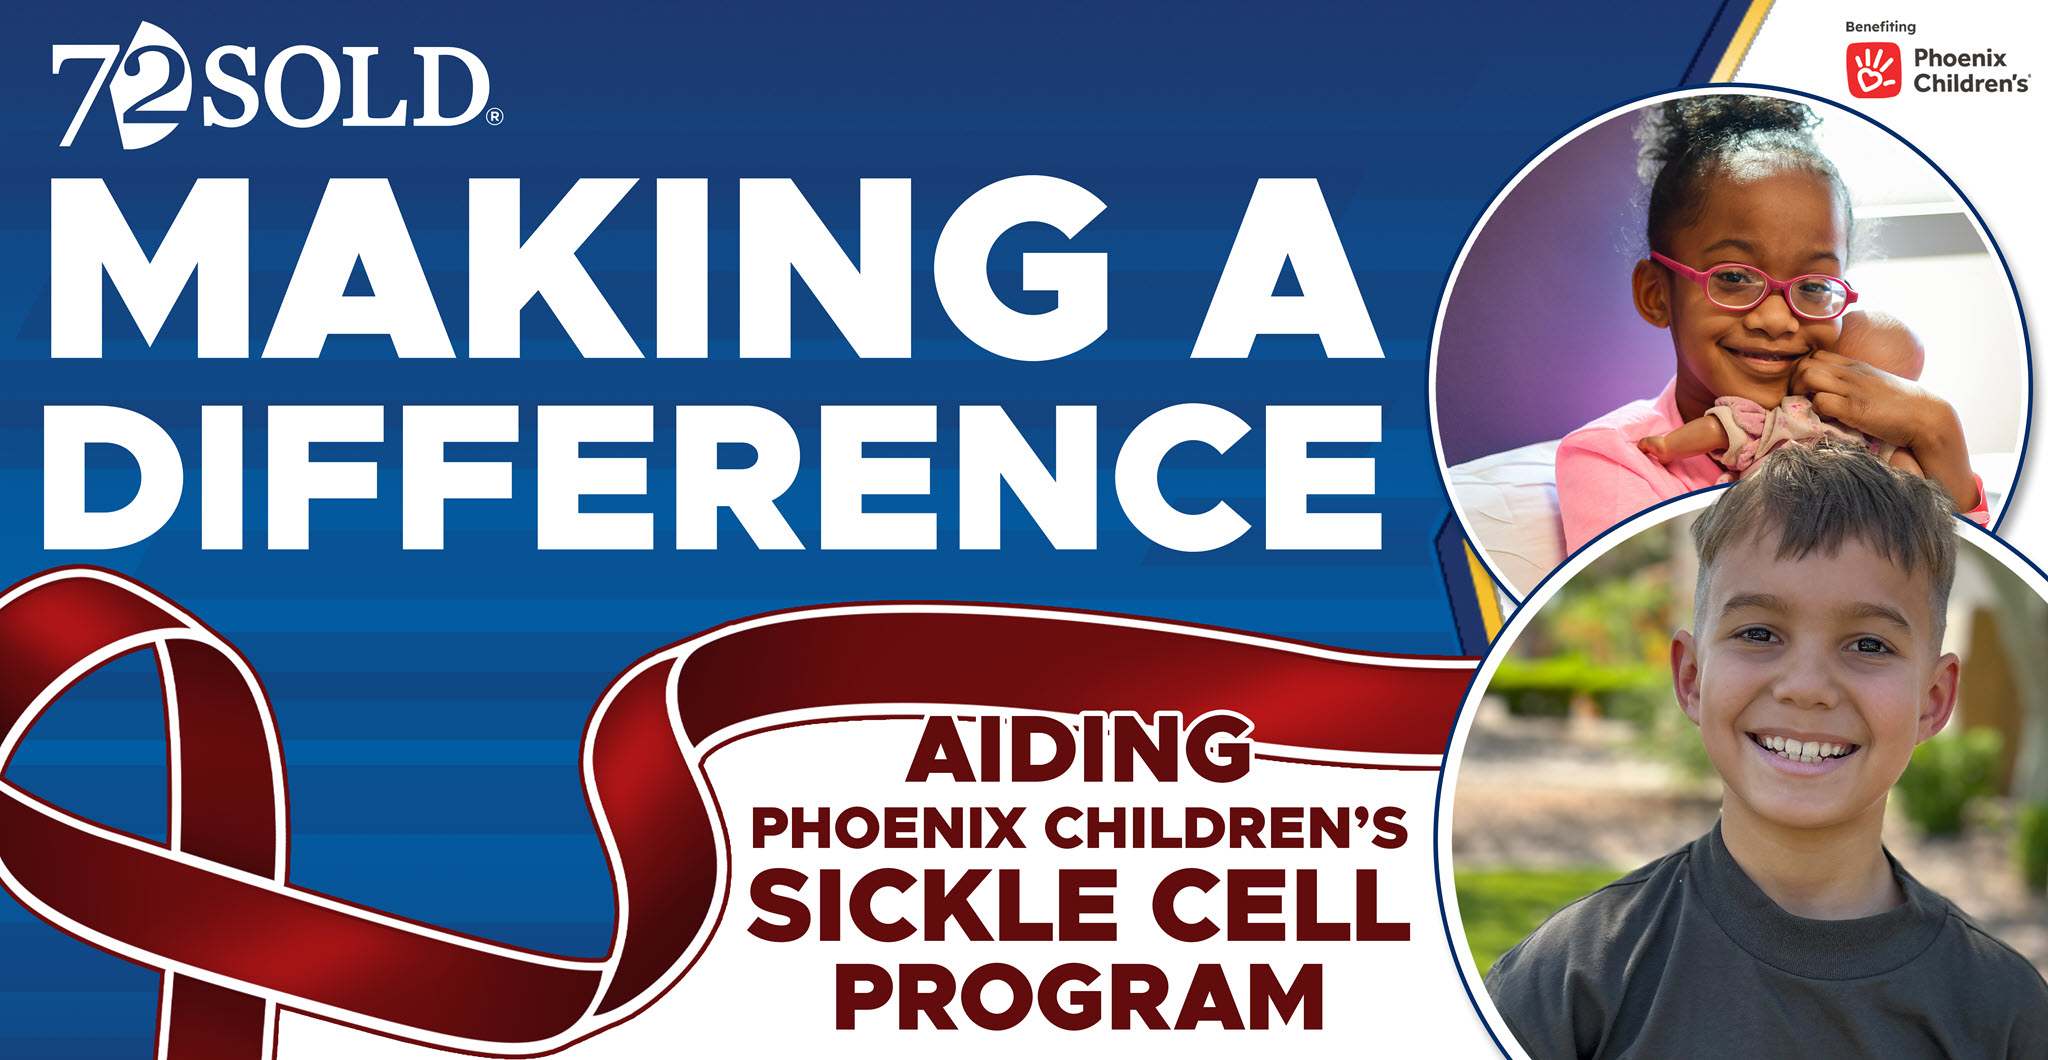 Aiding Phoenix Children's Sickle Cell Program